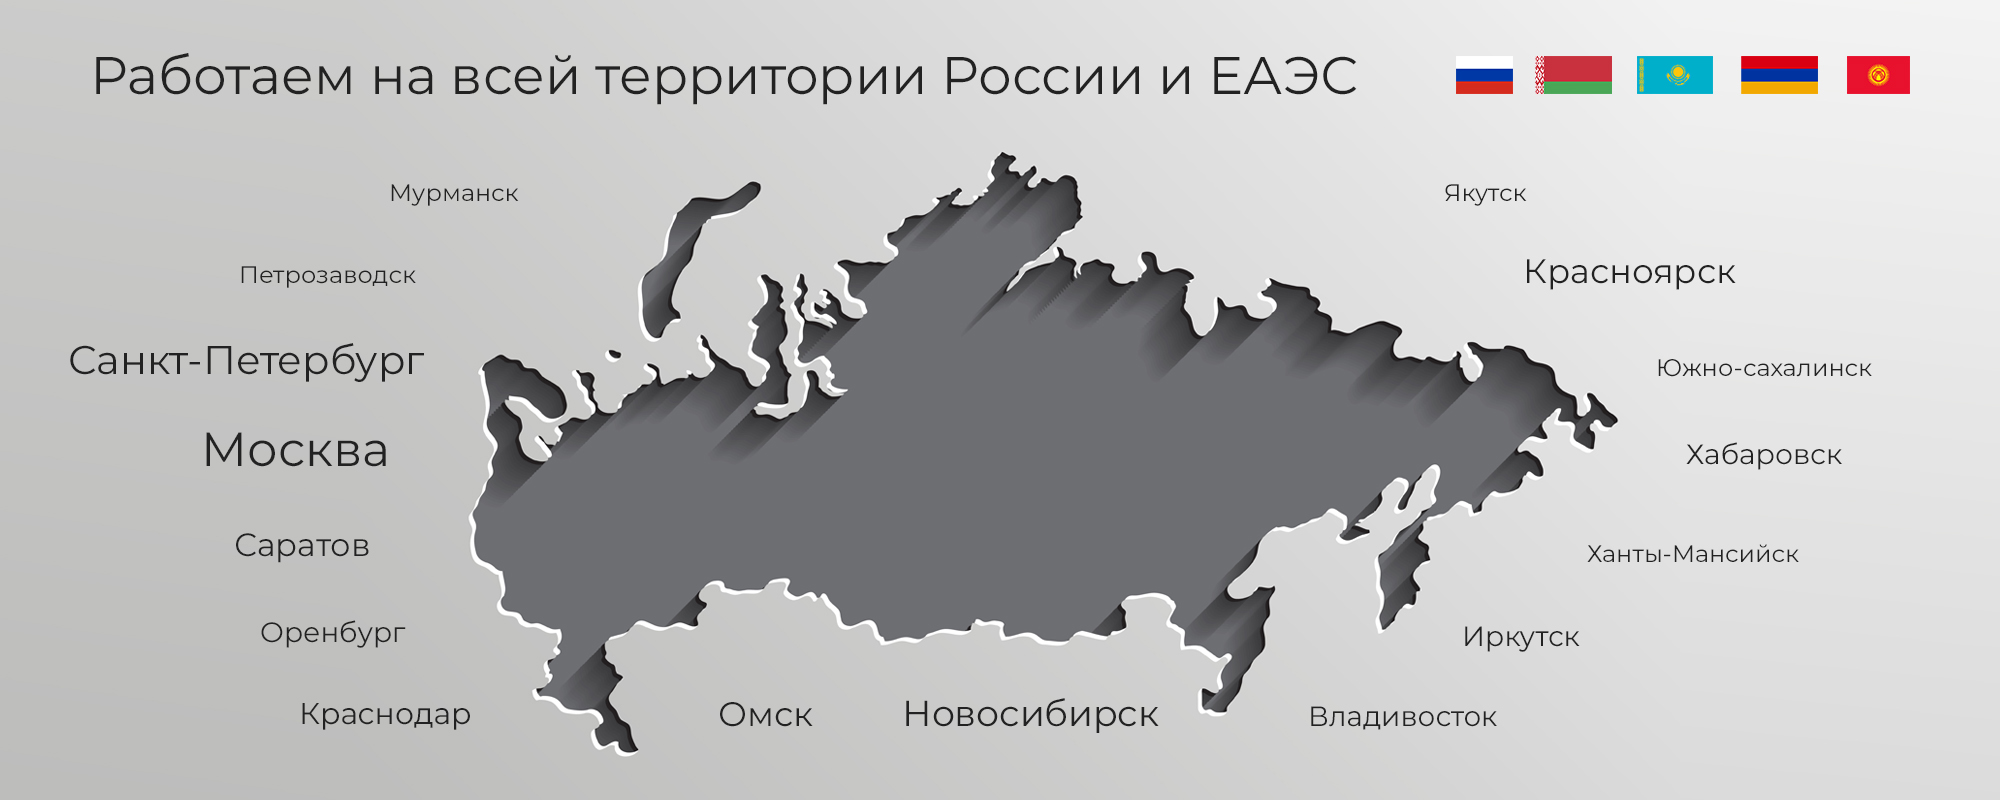 Работаем на всей территории России и ЕАЭС